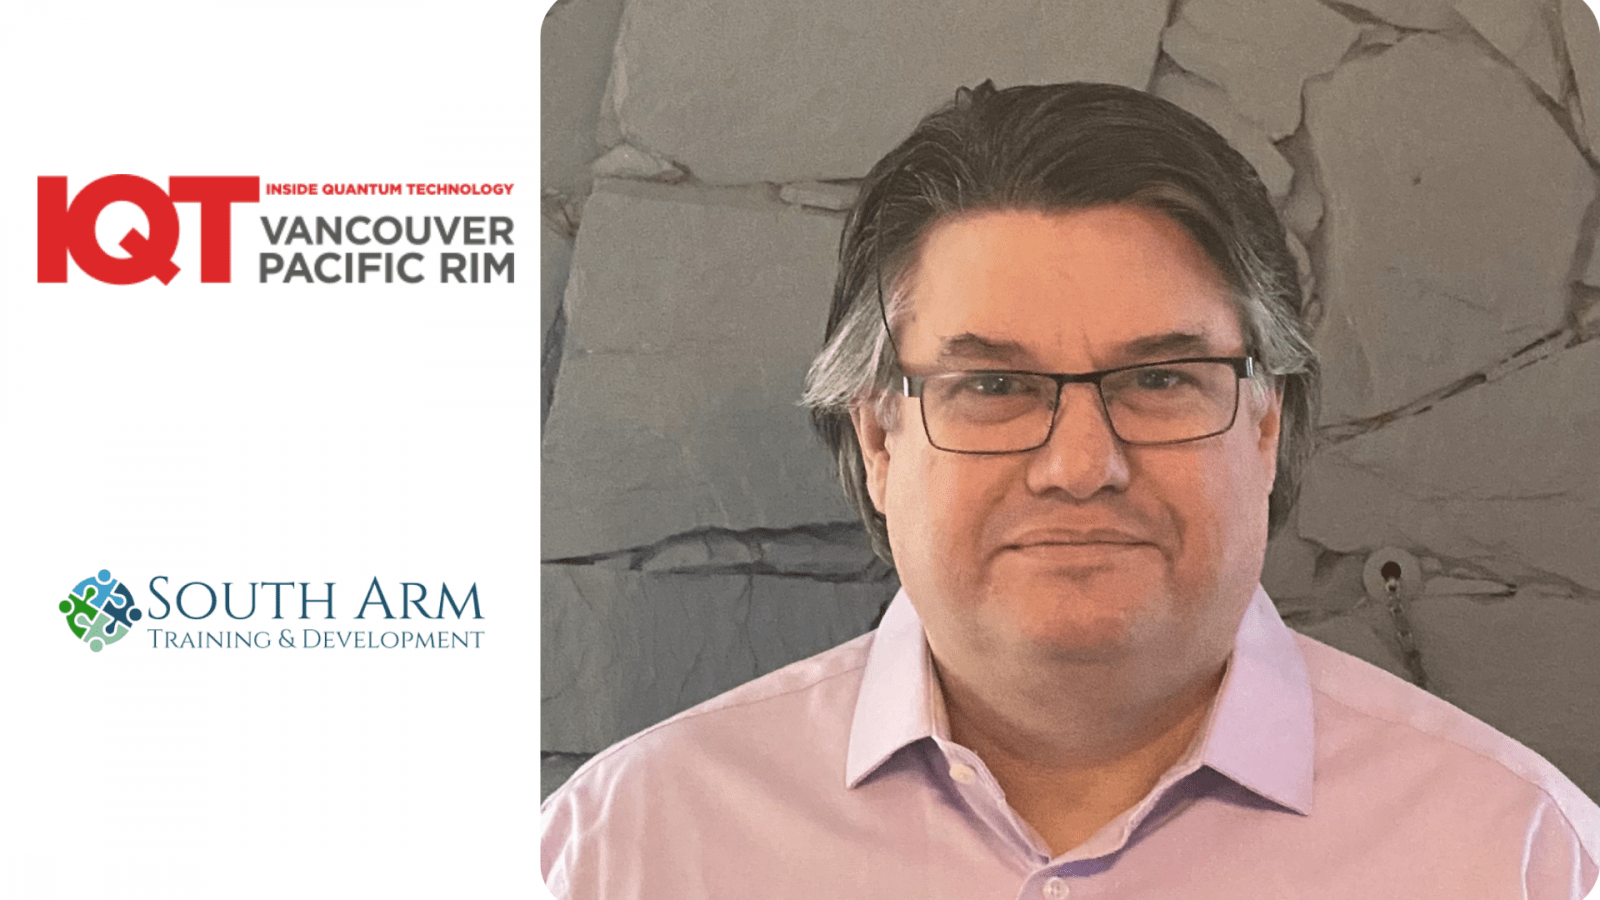 Dennis Green, directeur de South Arm Training and Development Ltd. est un conférencier 2024 pour la conférence IQT Vancouver/Pacific Rim